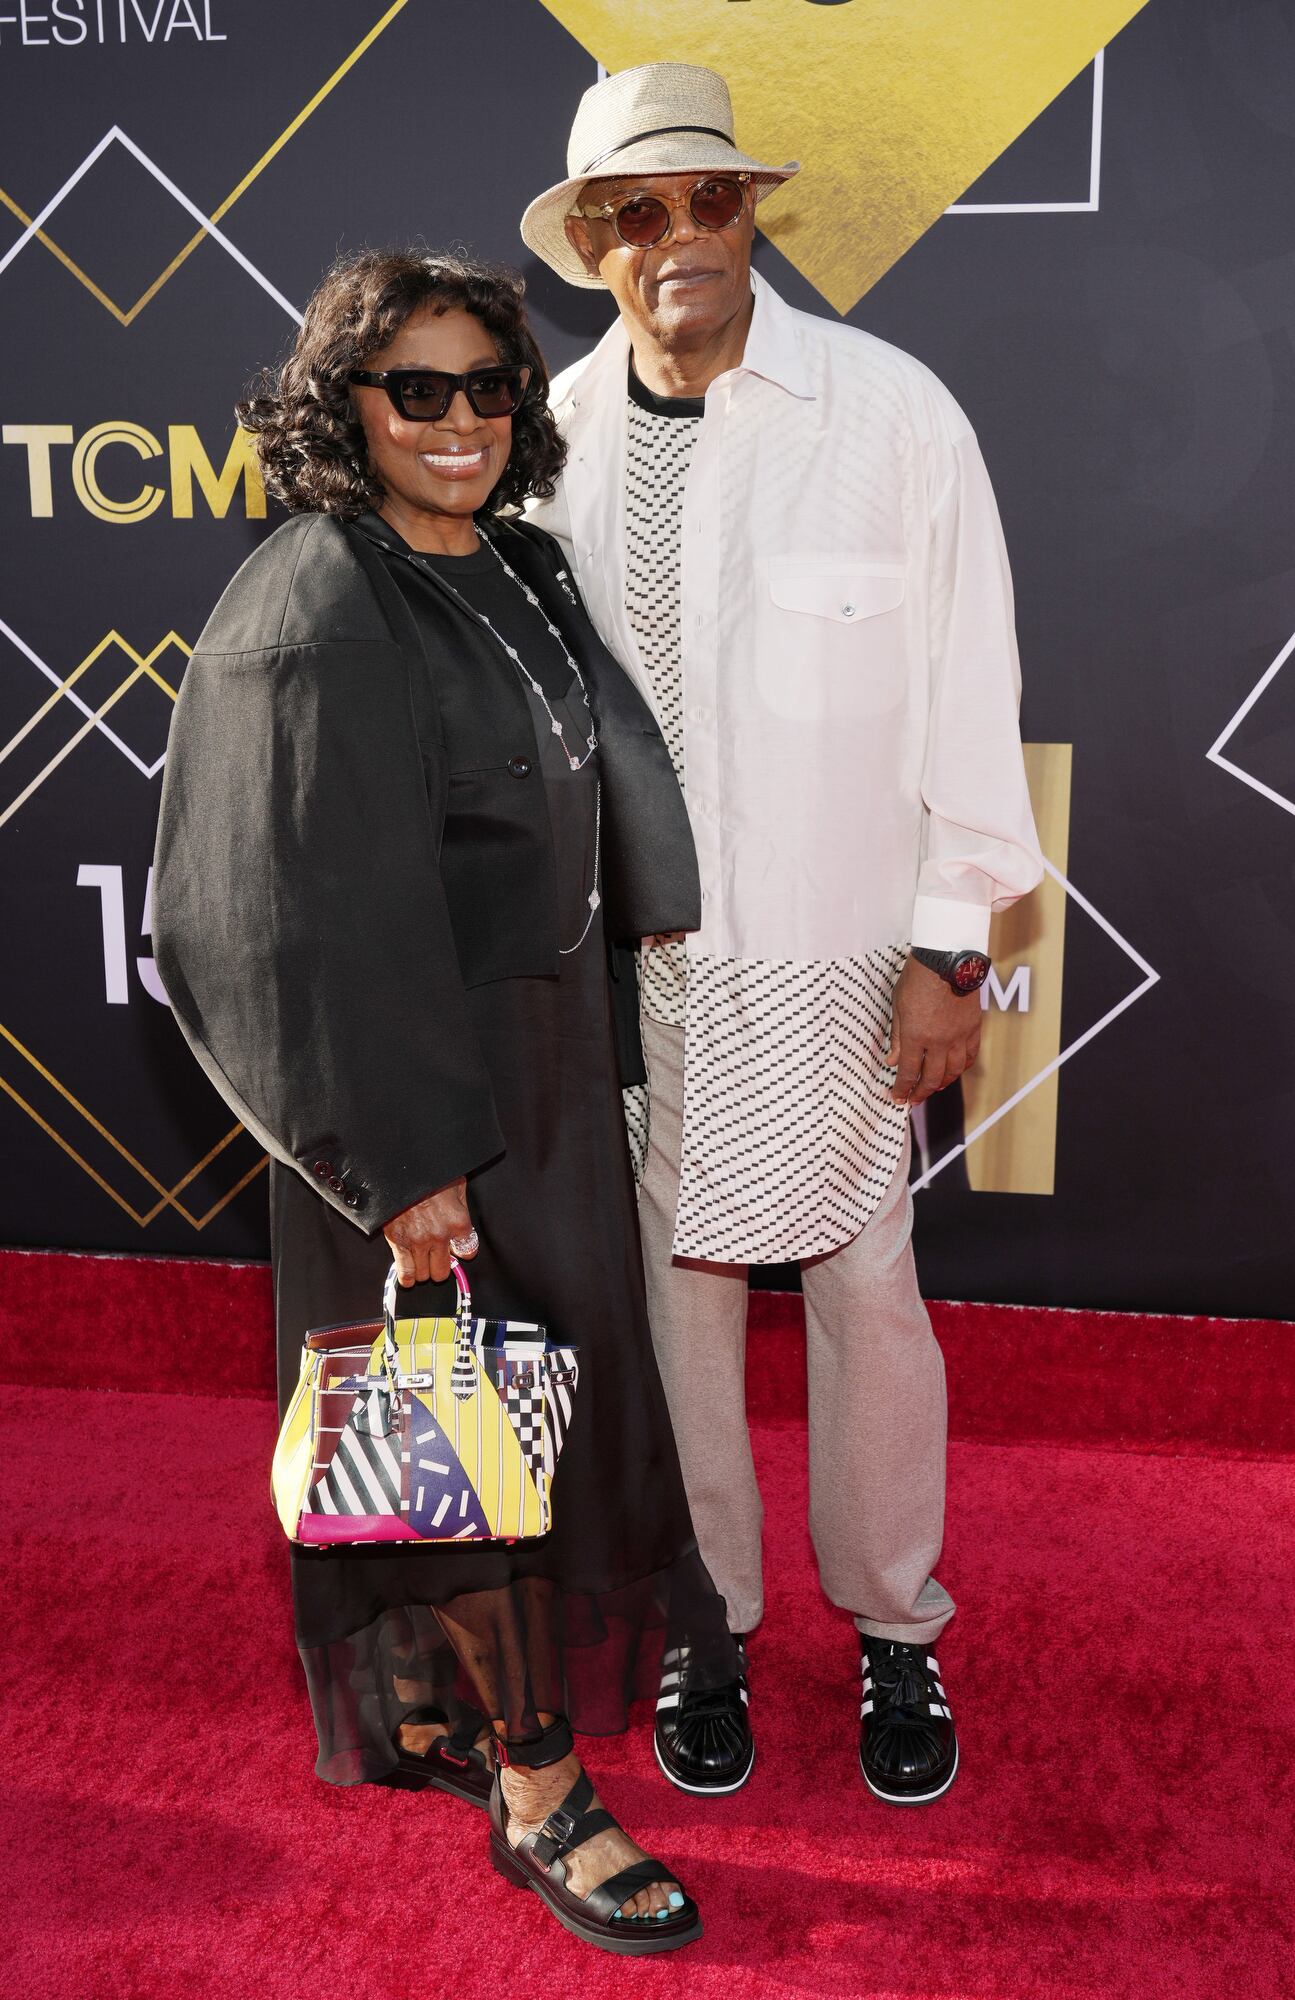 Samuel L. Jackson, uno de los actores favoritos de Quentin Tarantino, fue al evento junto a su mujer, LaTanya Richardson Jackson